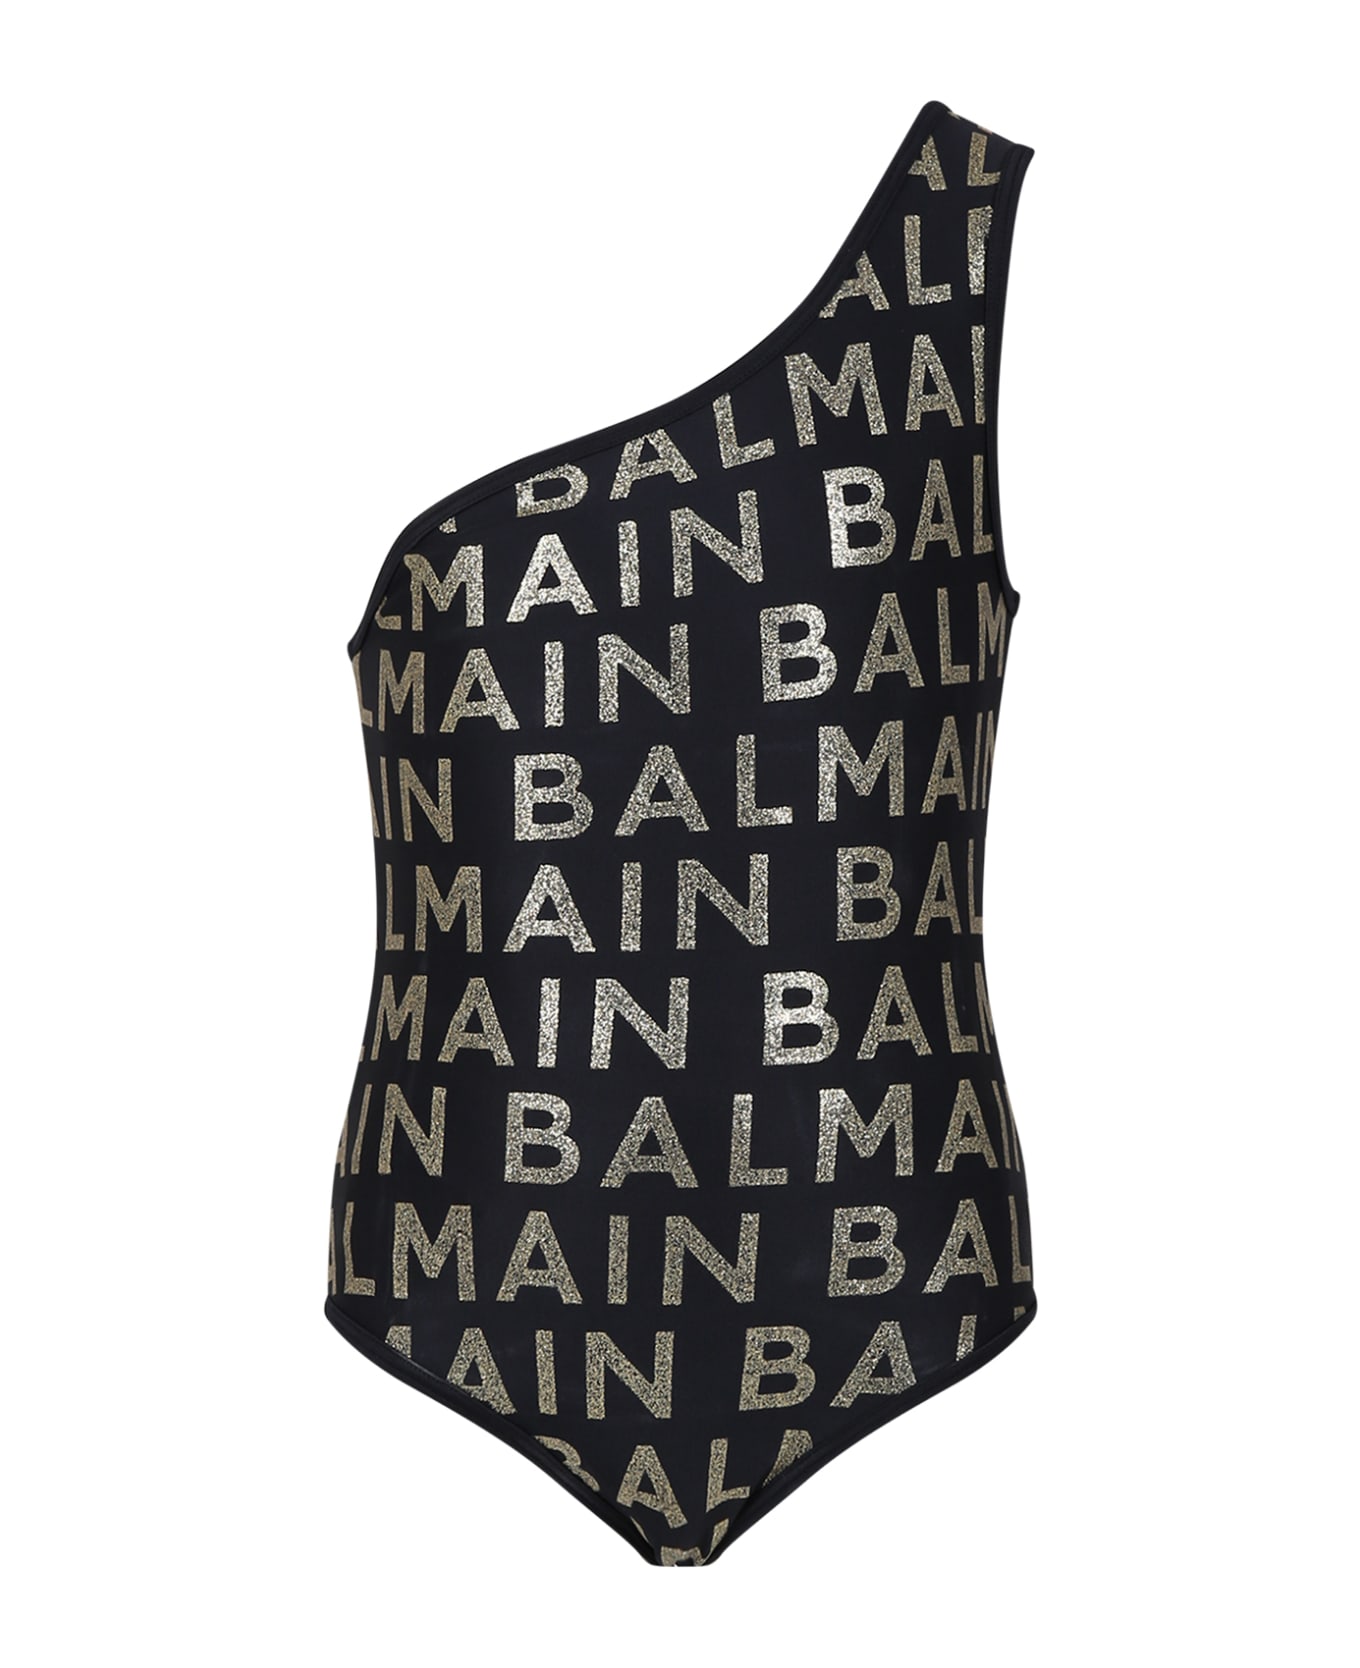 Balmain Black Swimsuit For Girl With Logo - Black